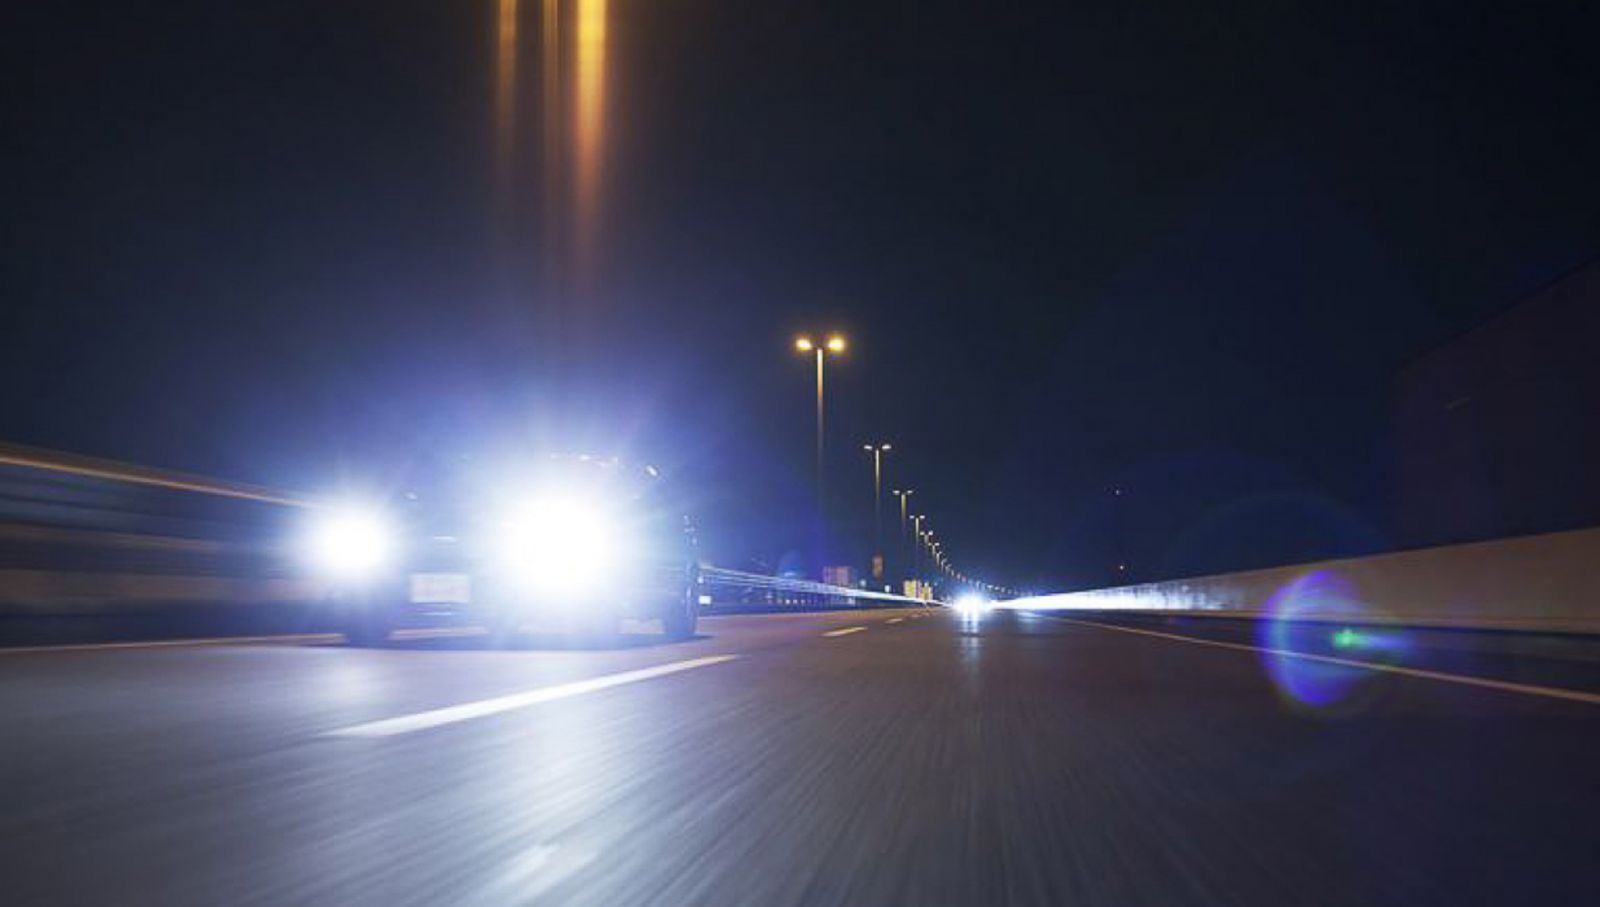 Kinh nghiệm lái xe ban đêm an toàn: Không nhìn trực diện vào đèn xe chạy ngược chiều